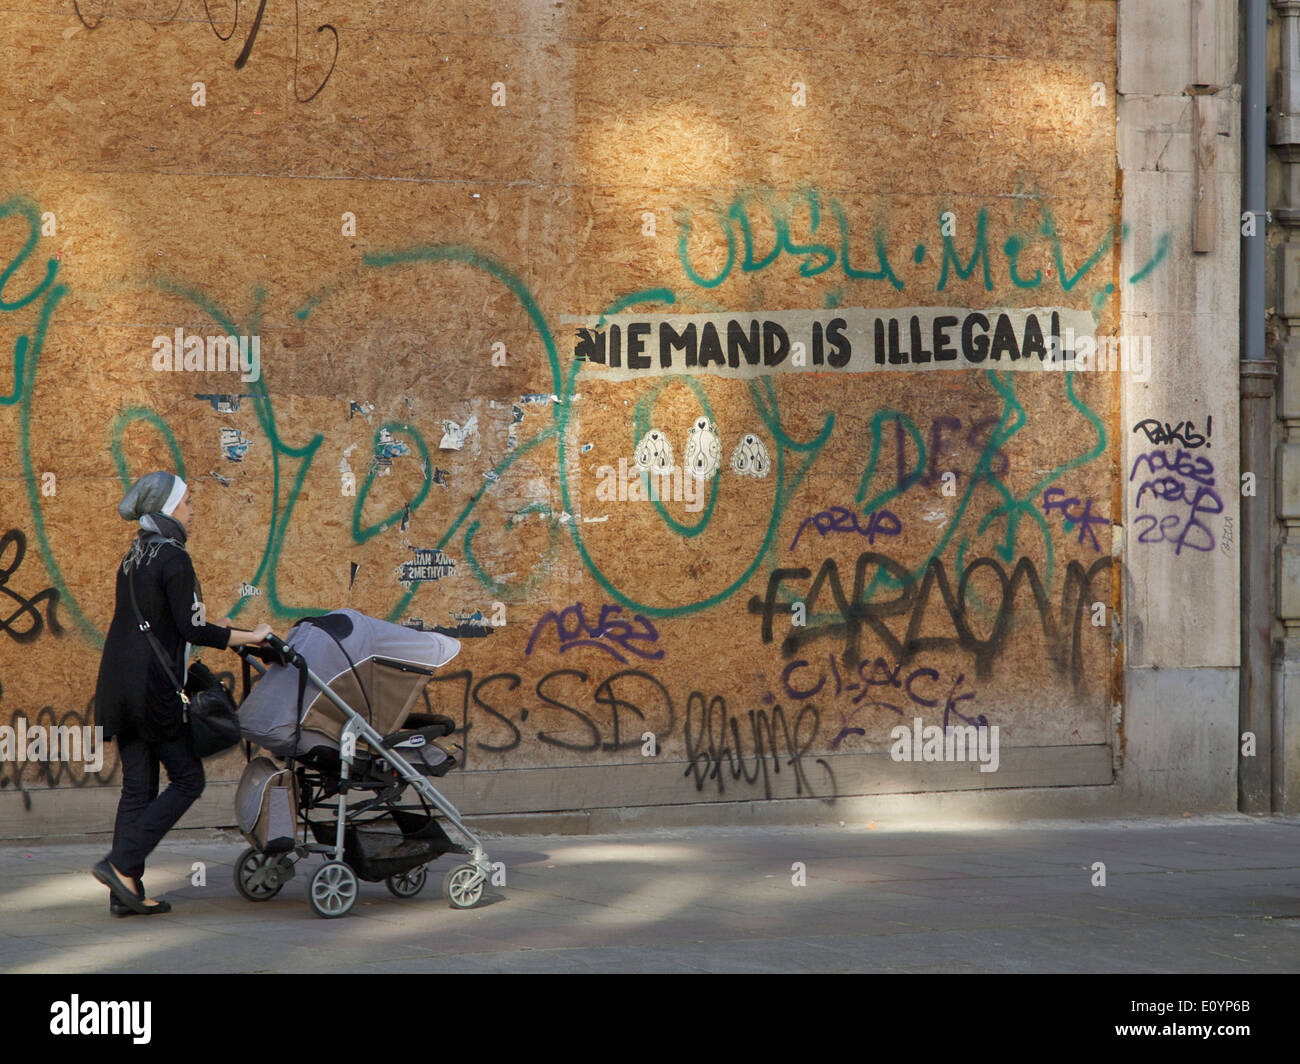 Frau zu Fuß schieben Kinderwagen mit Graffiti sagen: niemand ist illegal in niederländischer Sprache, Brüssel, Belgien Stockfoto